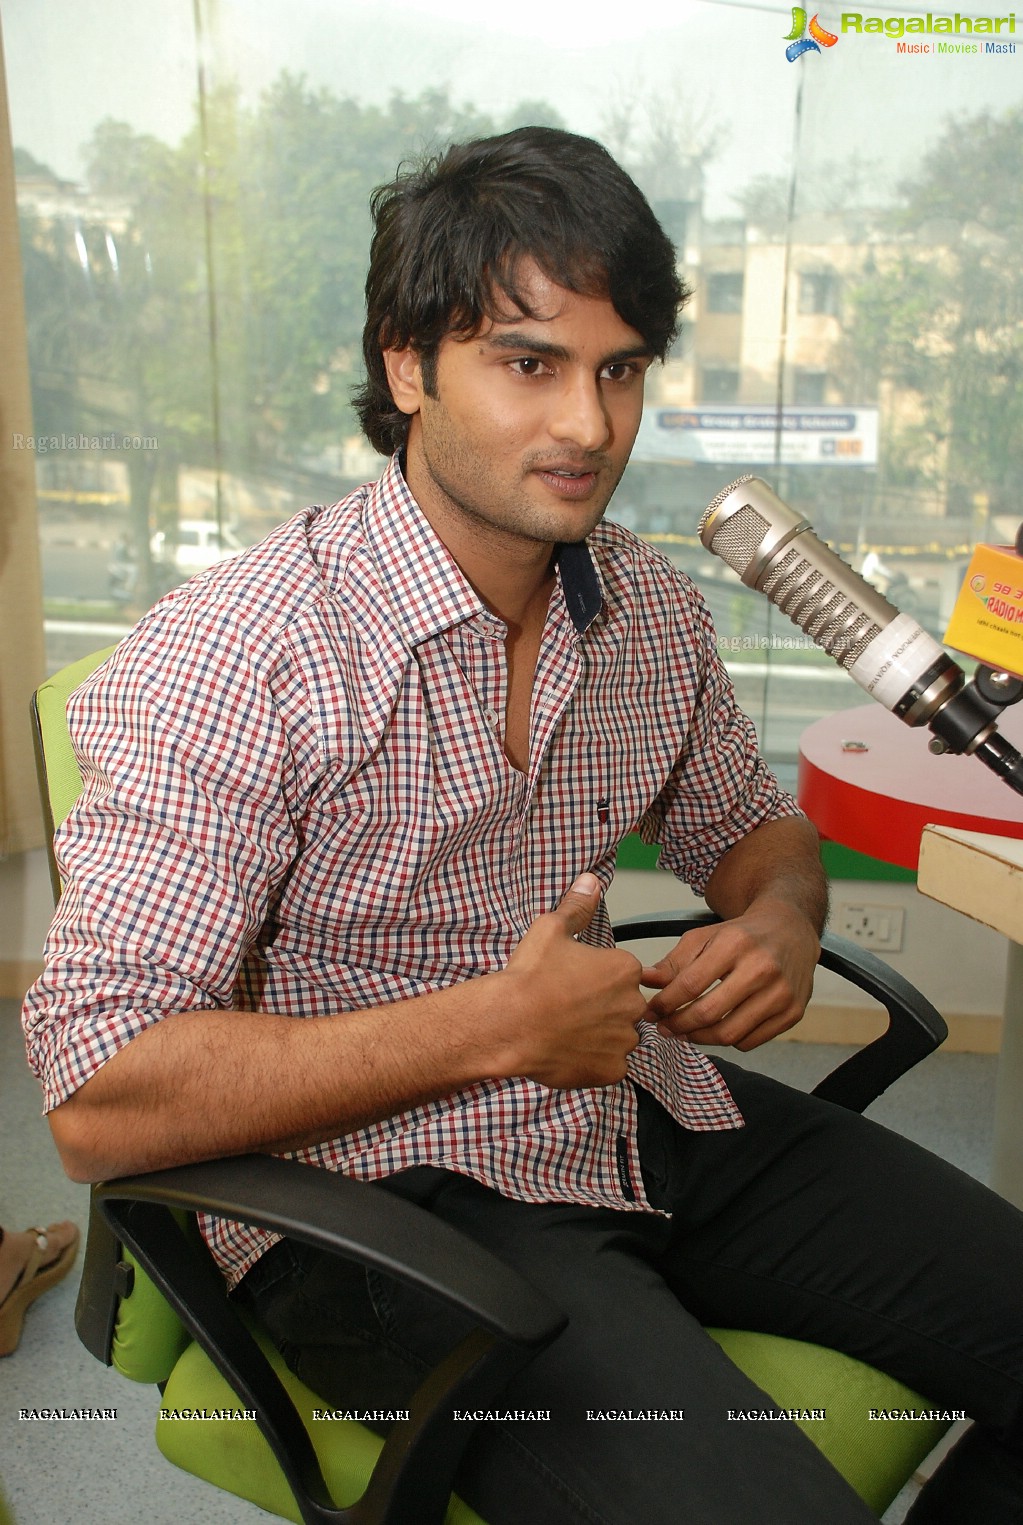 Naga Sudhir Babu at Radio Mirchi